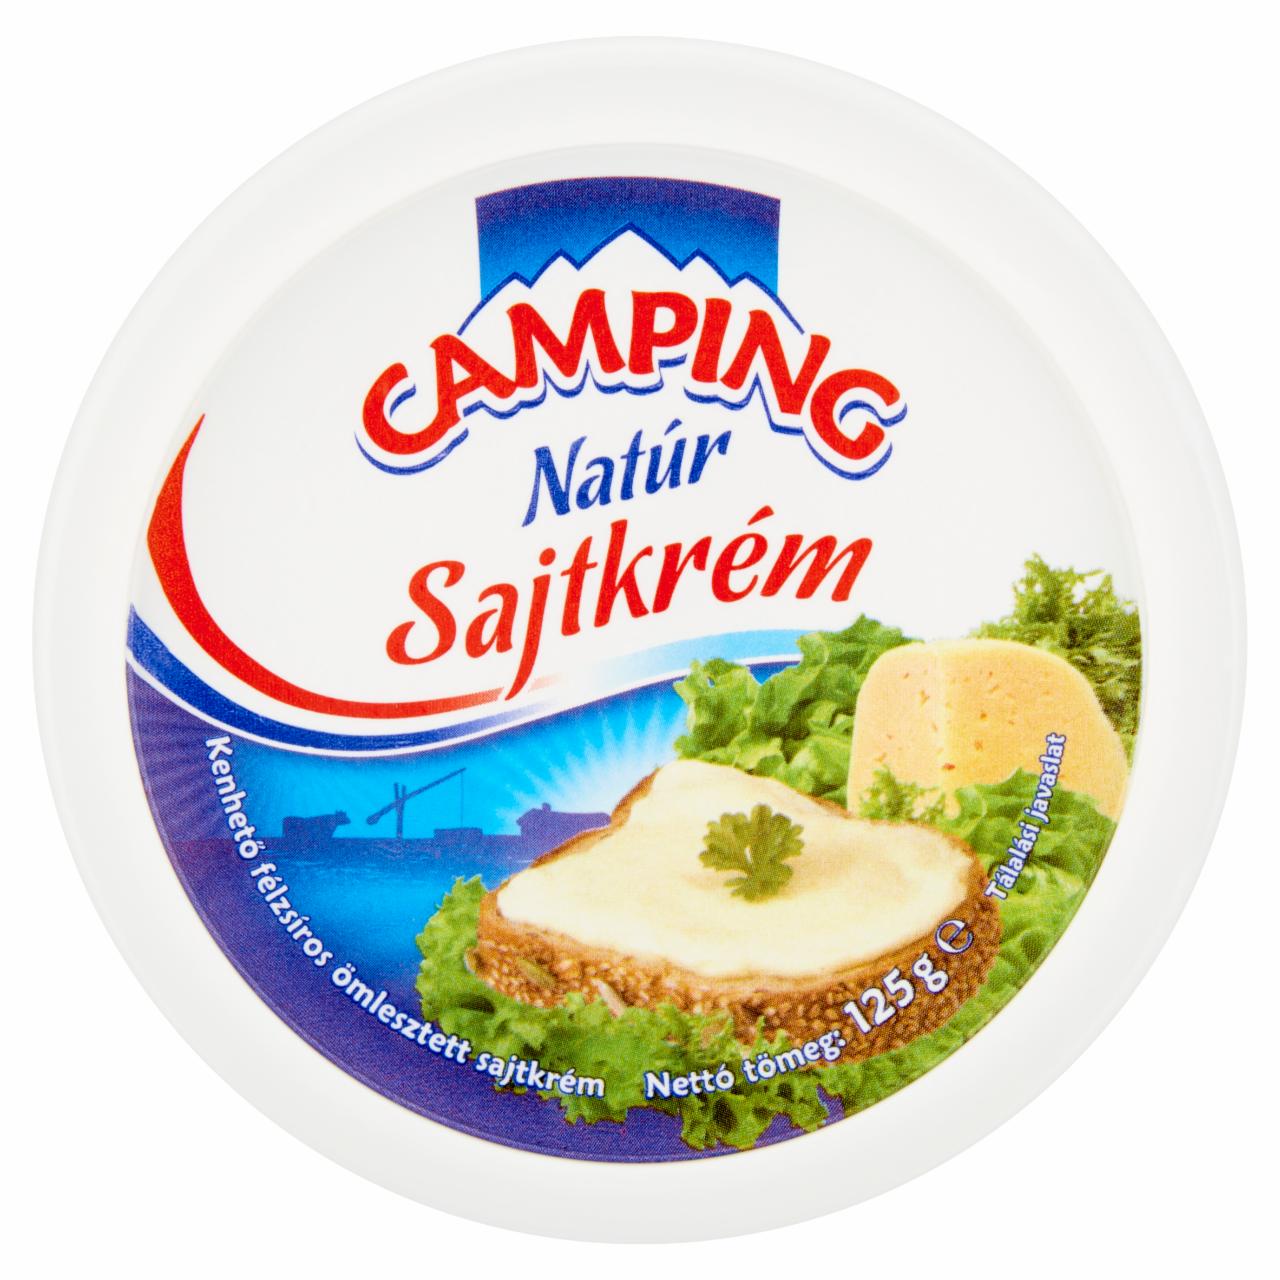 Képek - Camping natúr kenhető félzsíros ömlesztett sajtkrém 125 g